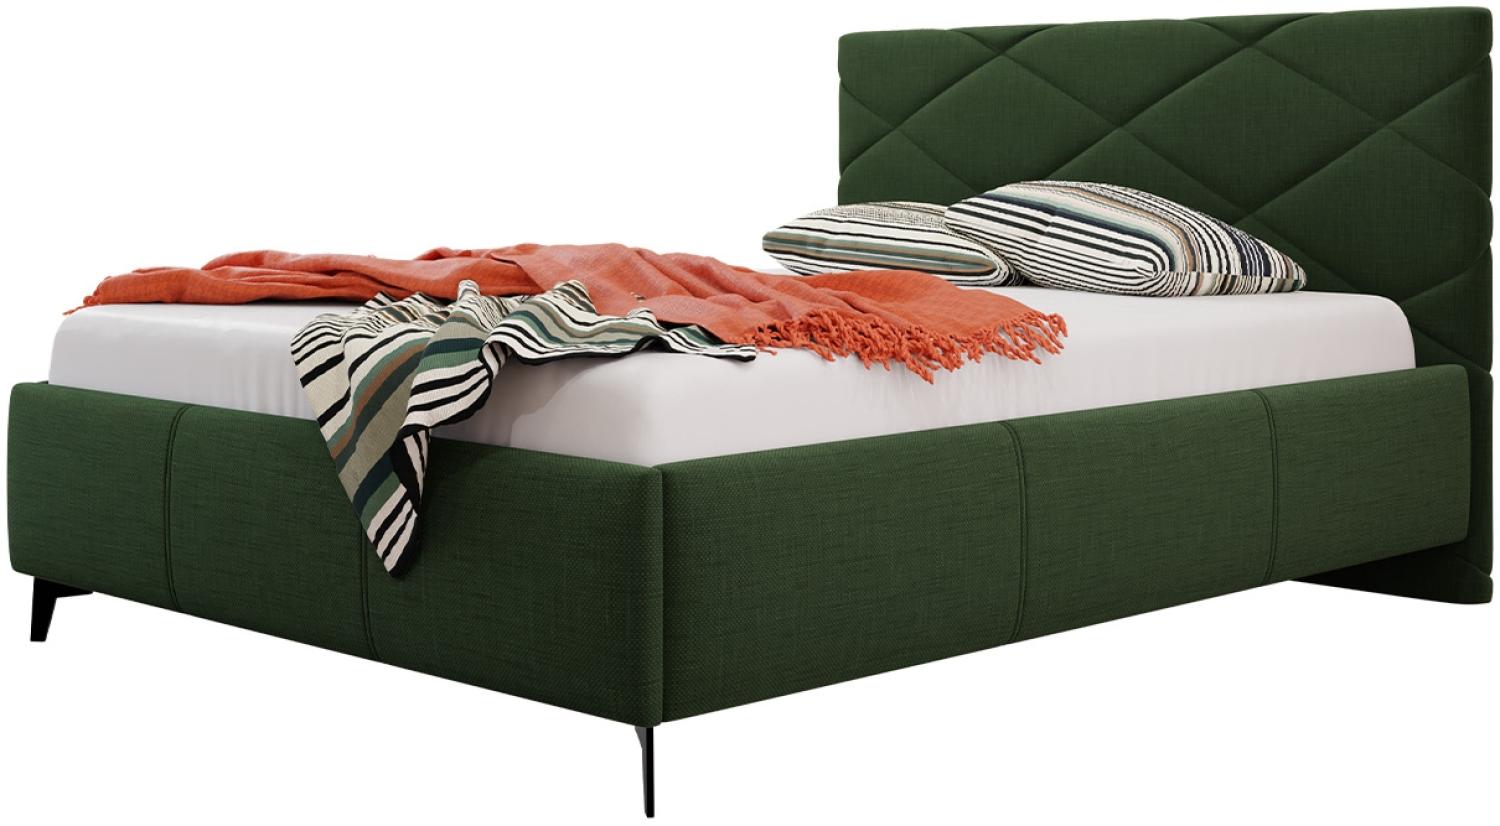 Polsterbett mit Bettkasten Samdom (Farbe: Breeze 11, Größe: 140x200 cm) Bild 1